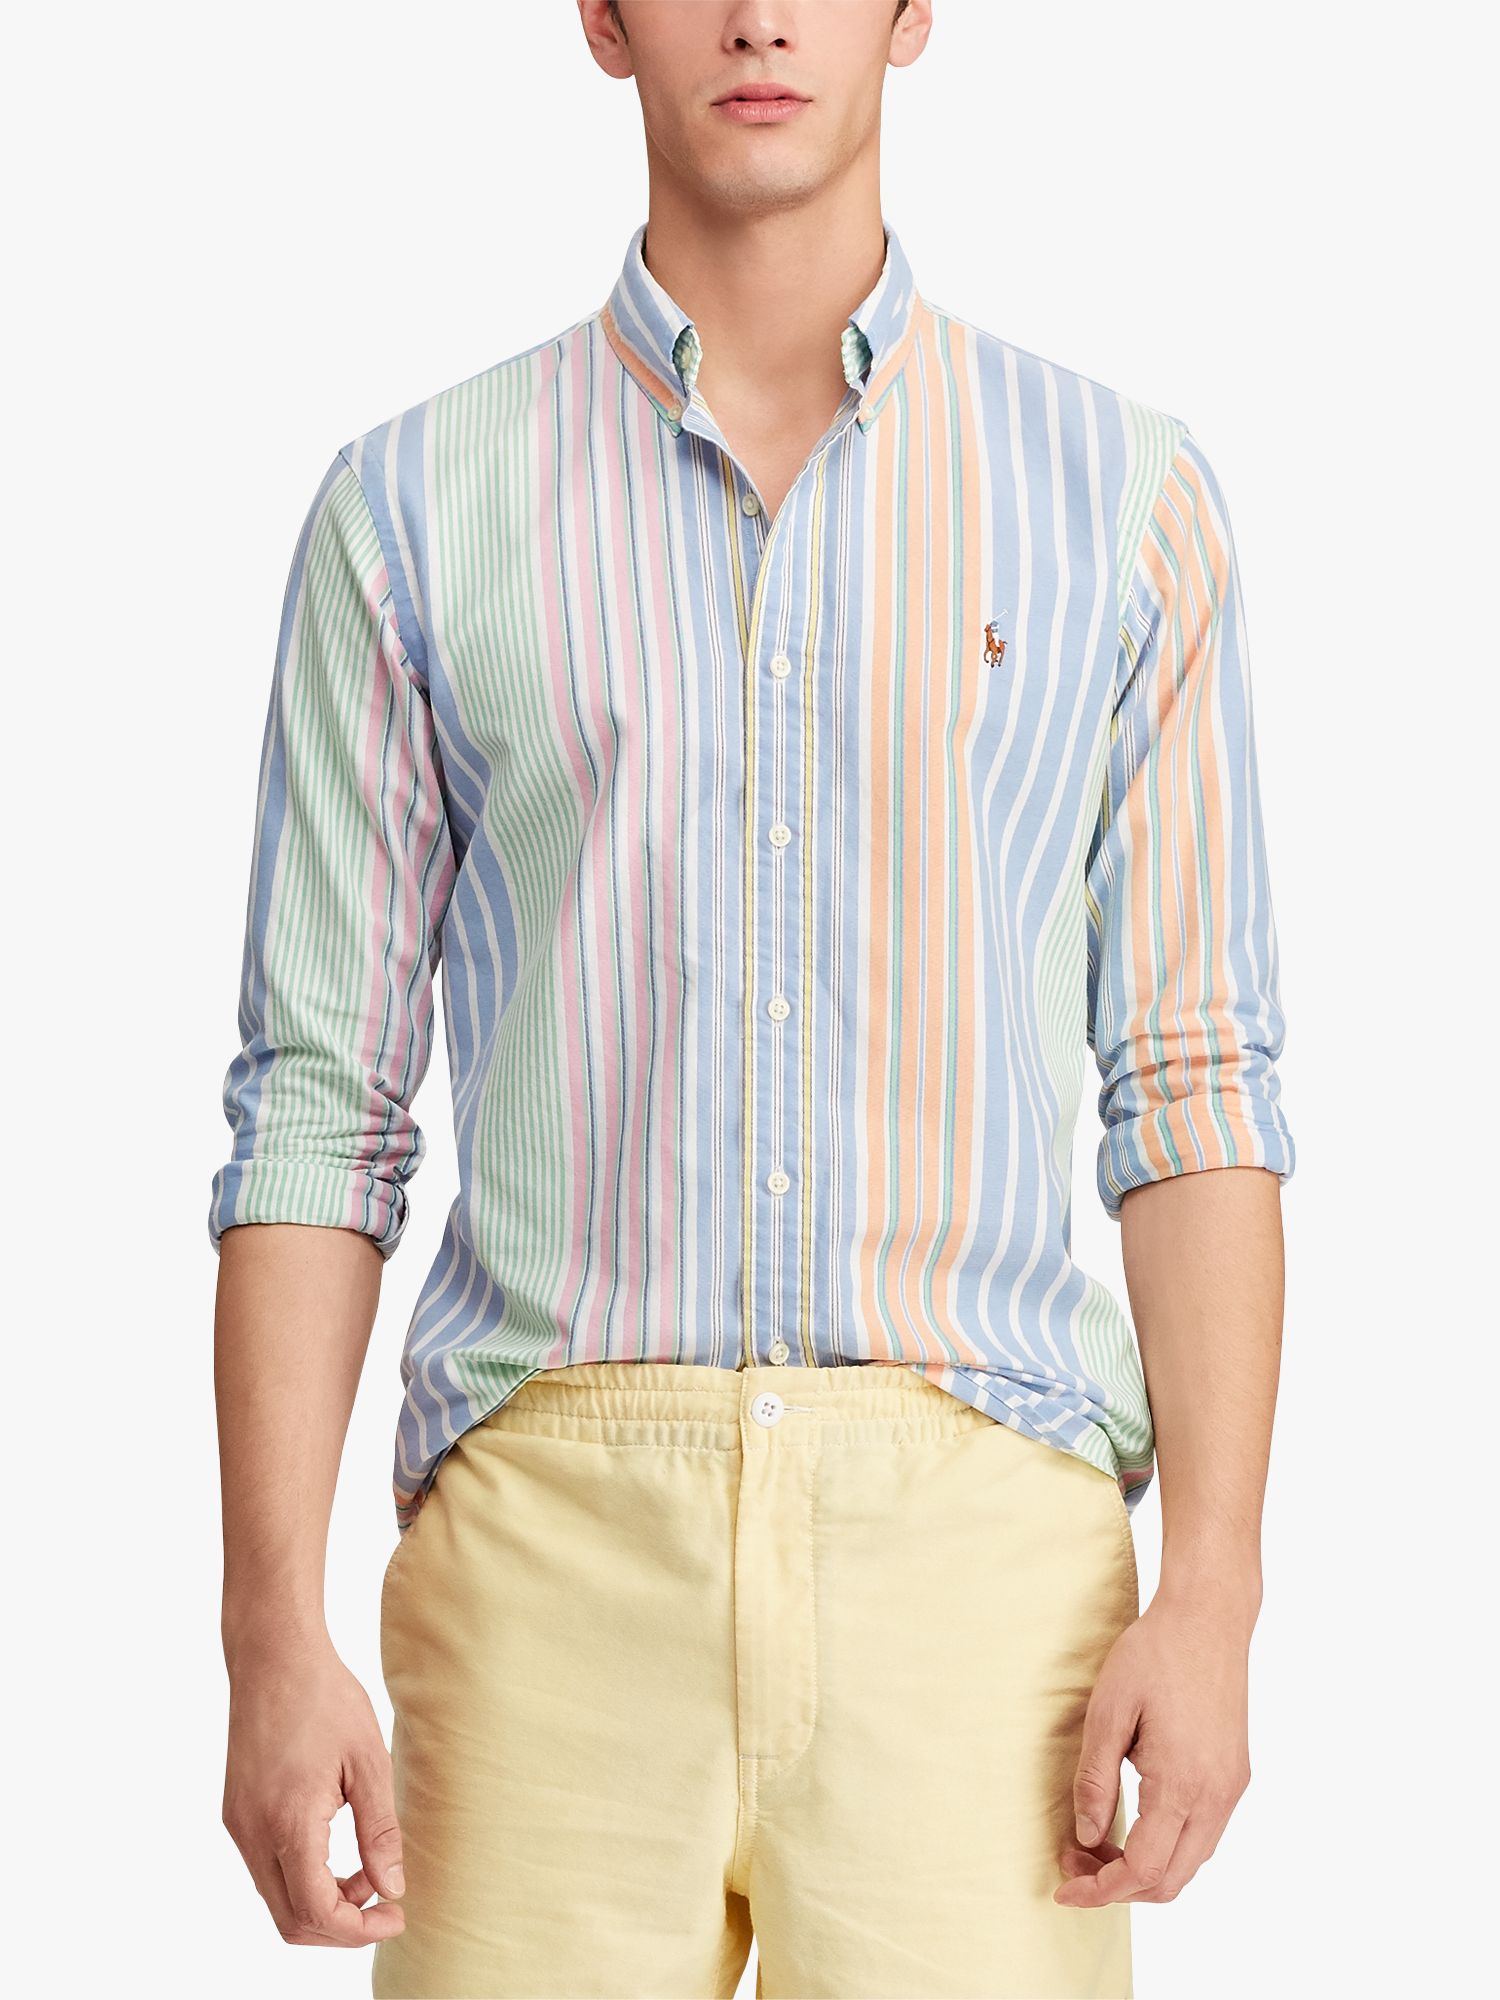 pastel ralph lauren shirt